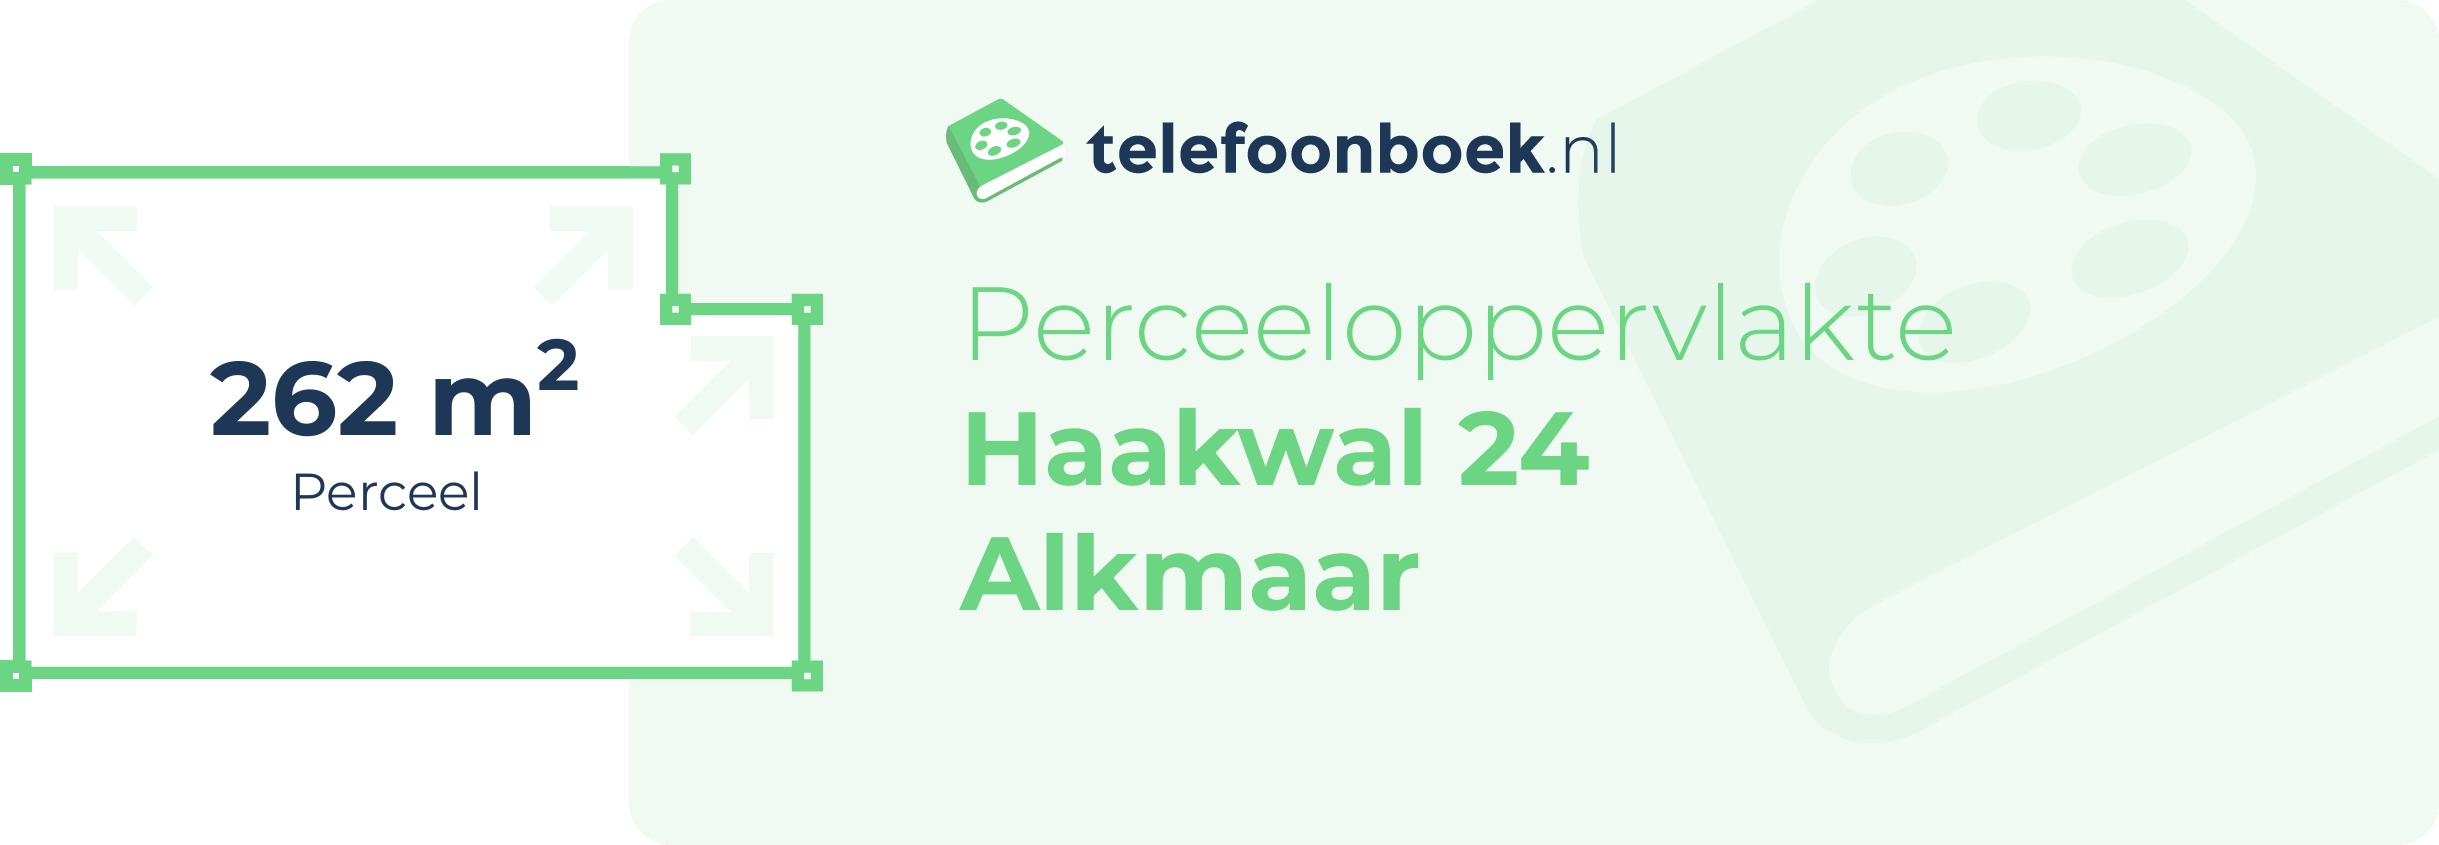 Perceeloppervlakte Haakwal 24 Alkmaar